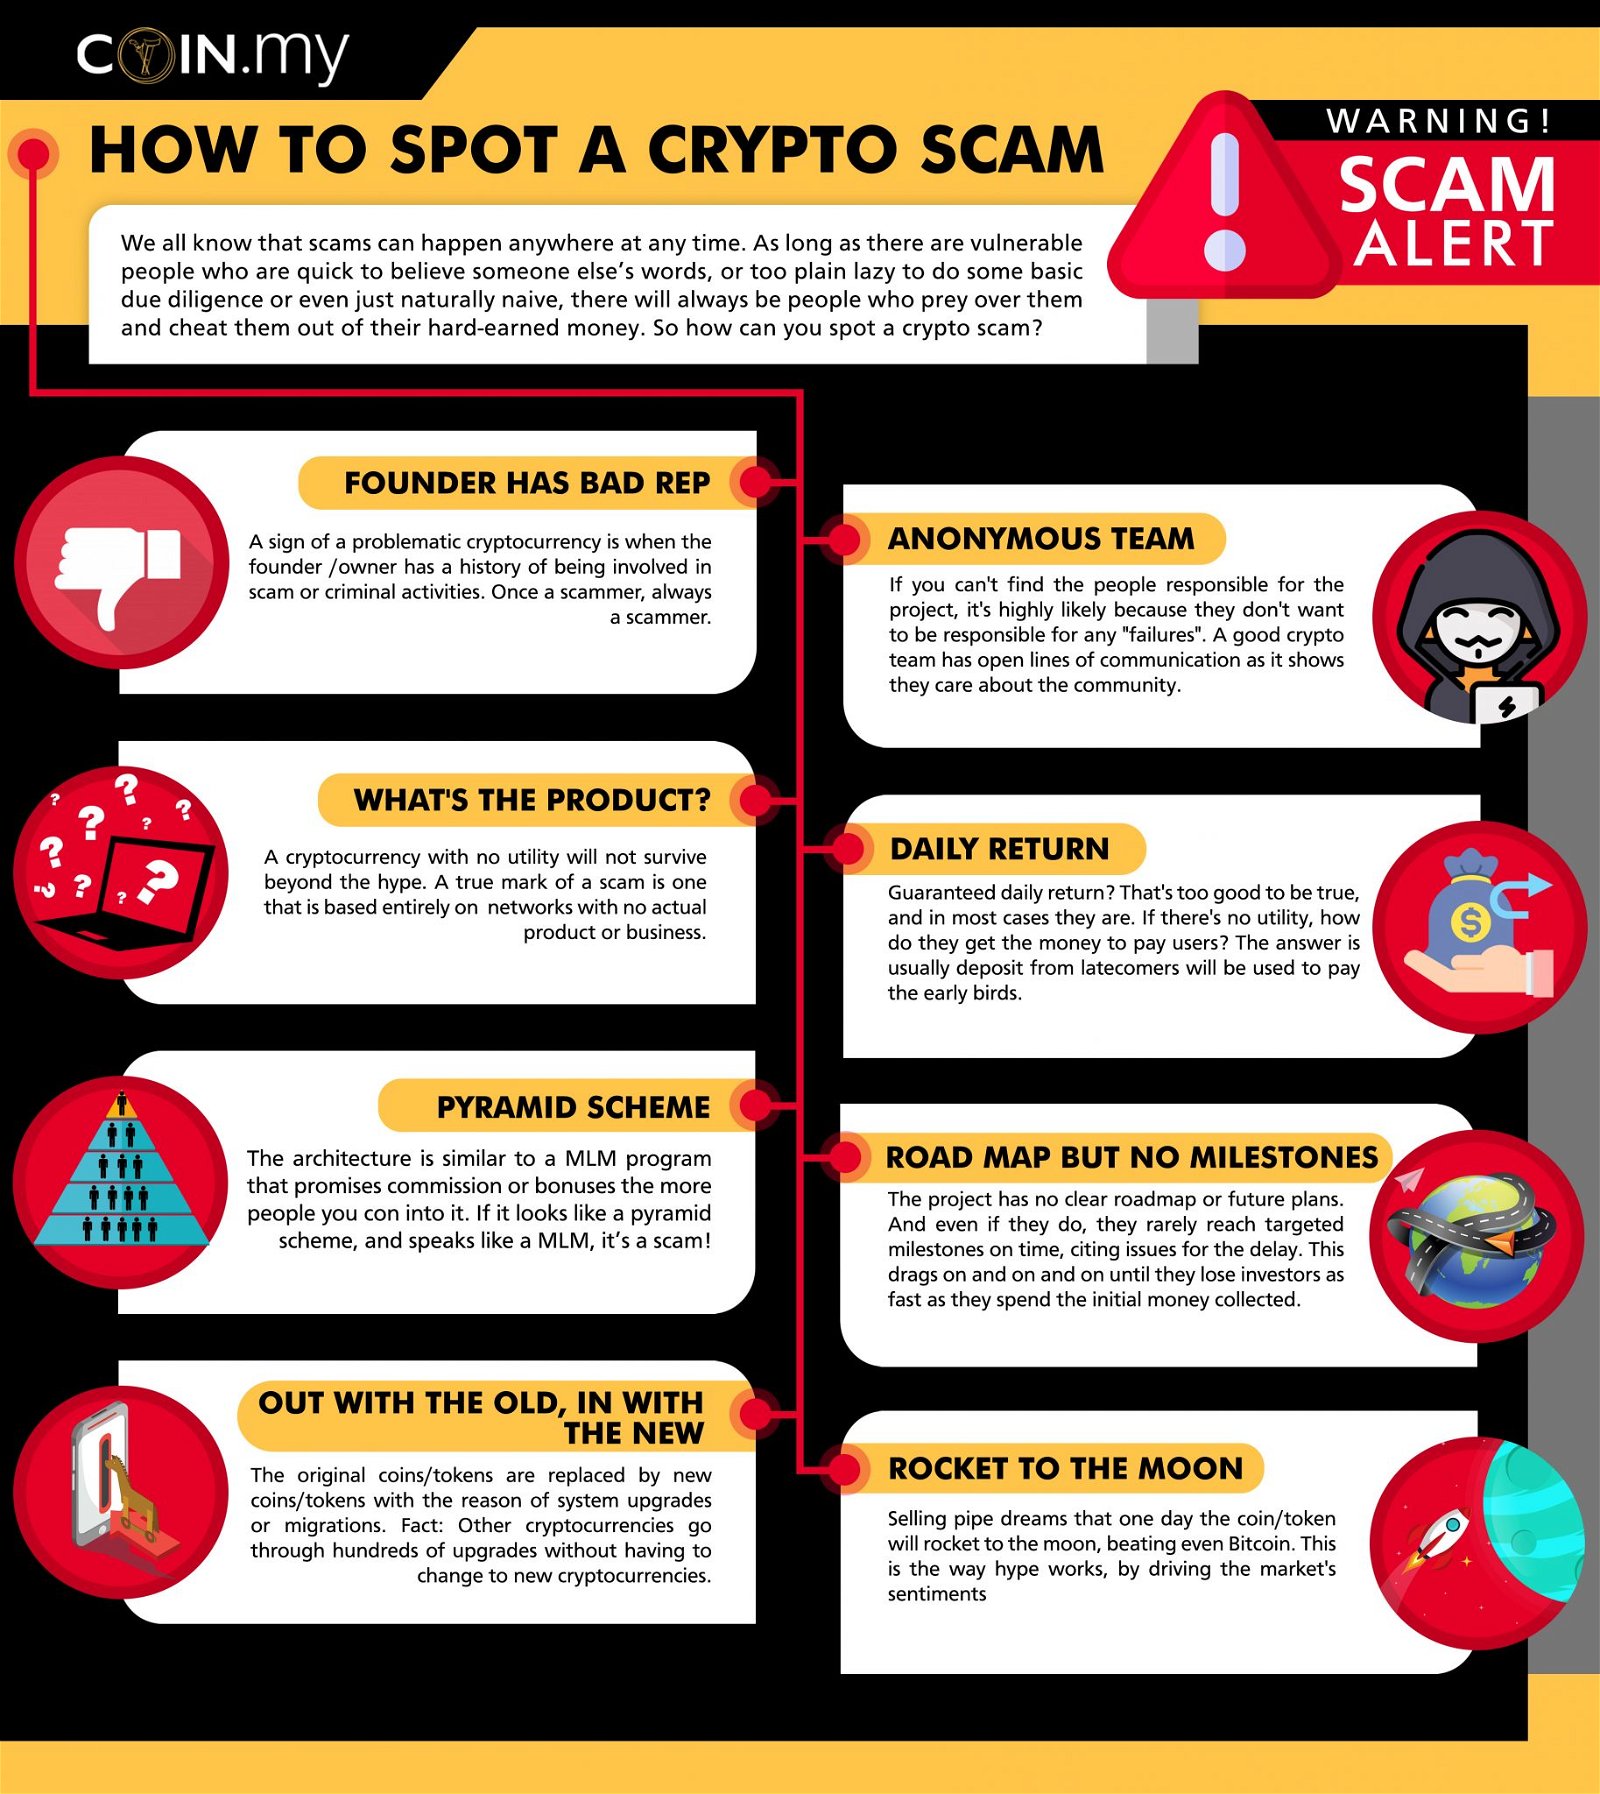 is crypto .com a scam